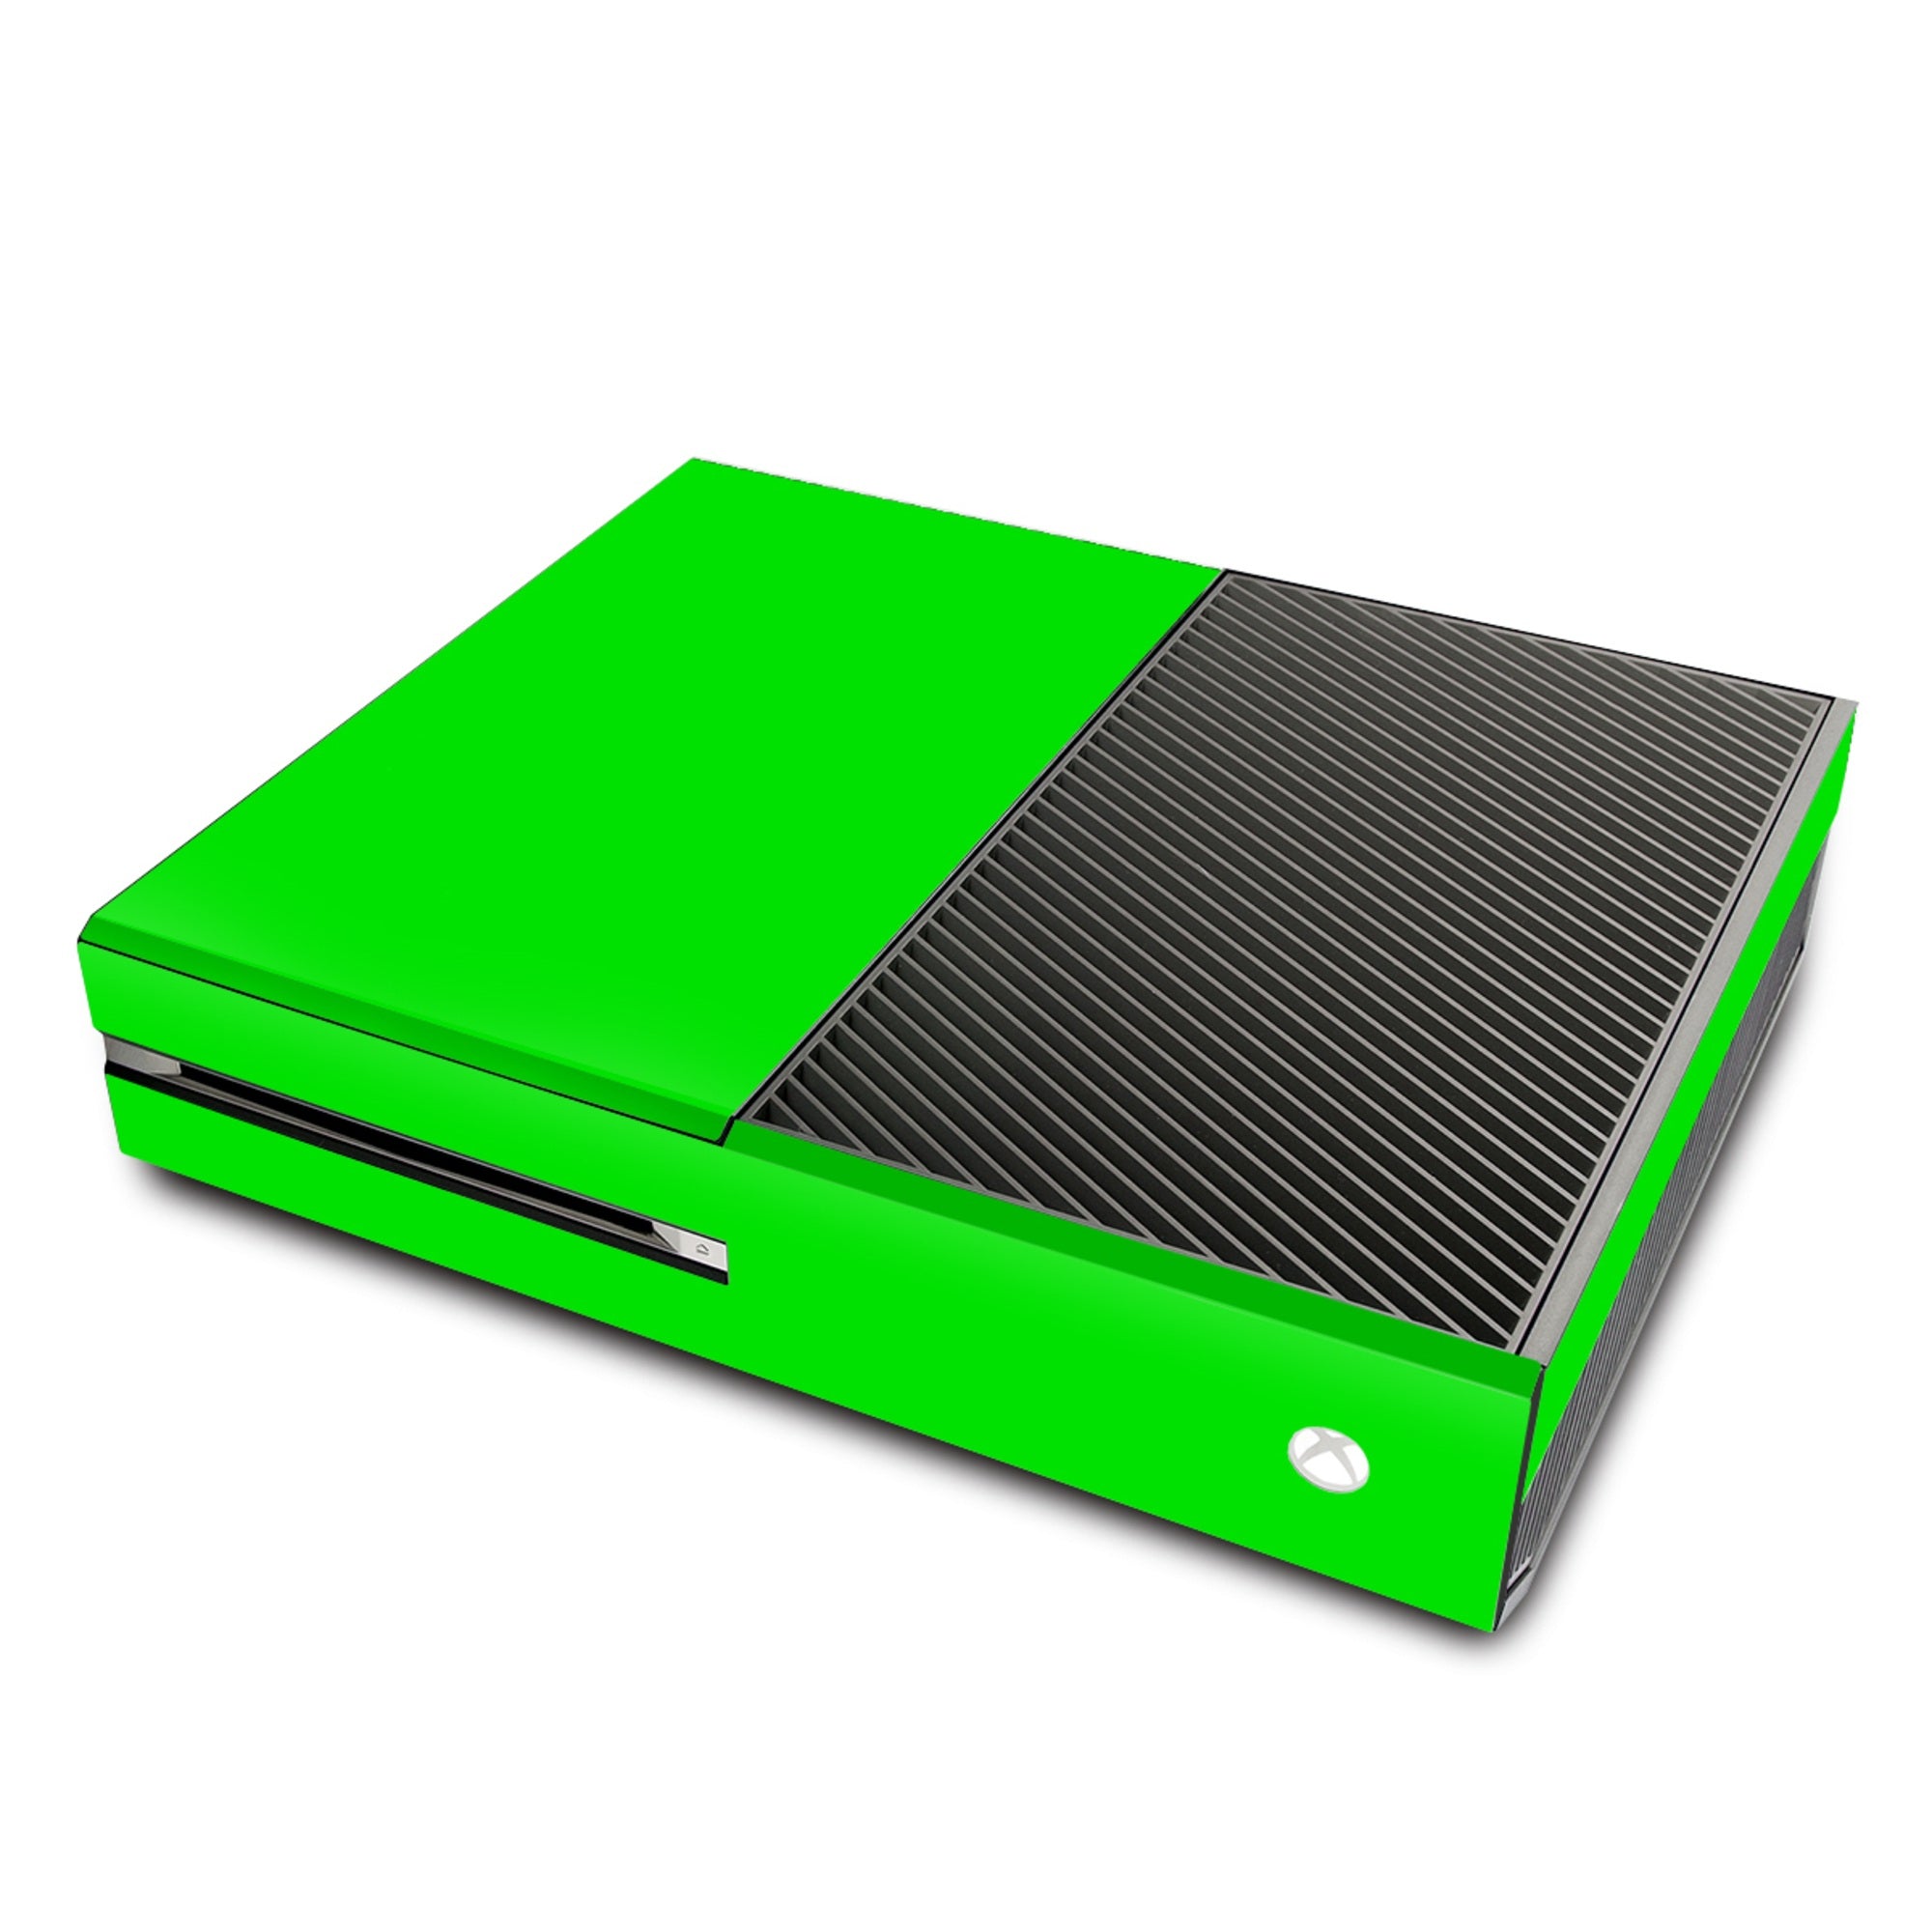 Solid State Slime - Microsoft Xbox One Skin